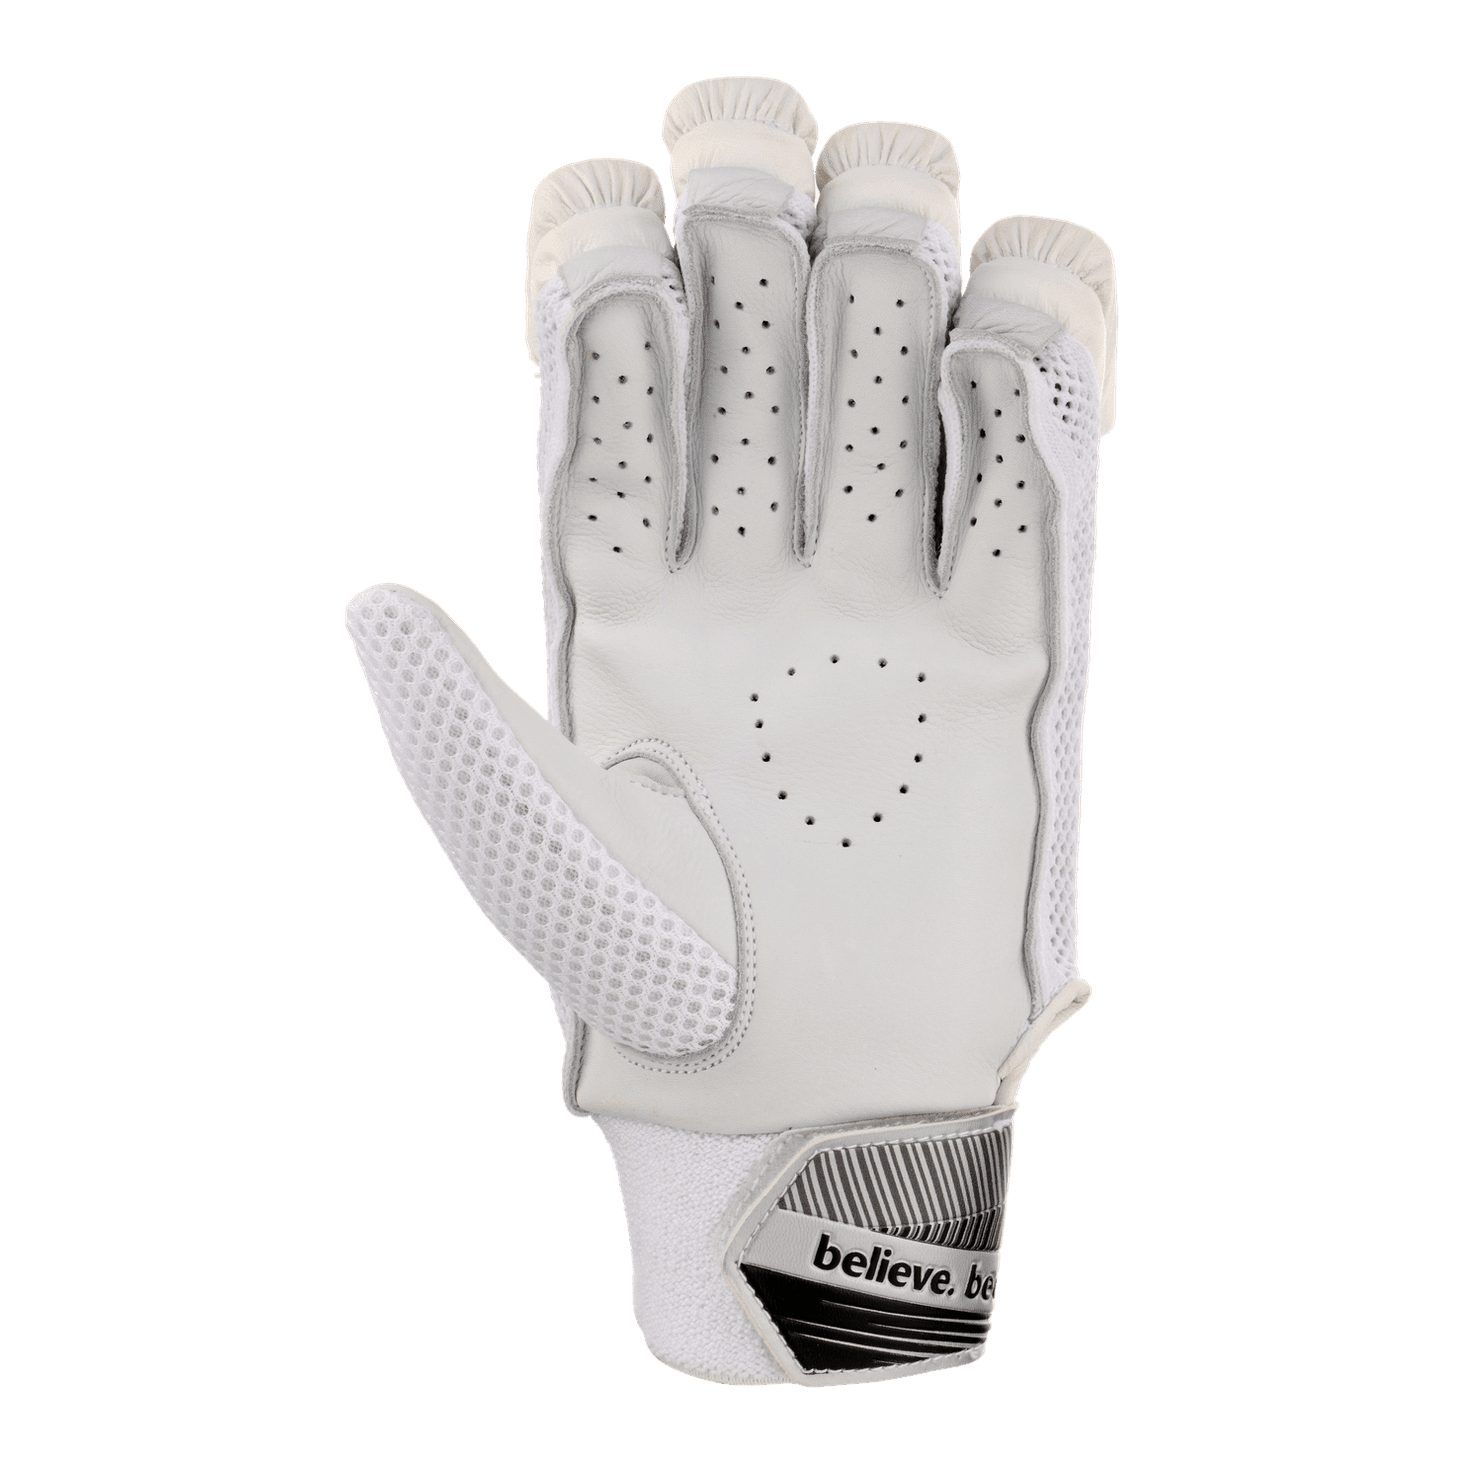 SG Gloves SG Litevate White Junior Cricket Batting Gloves